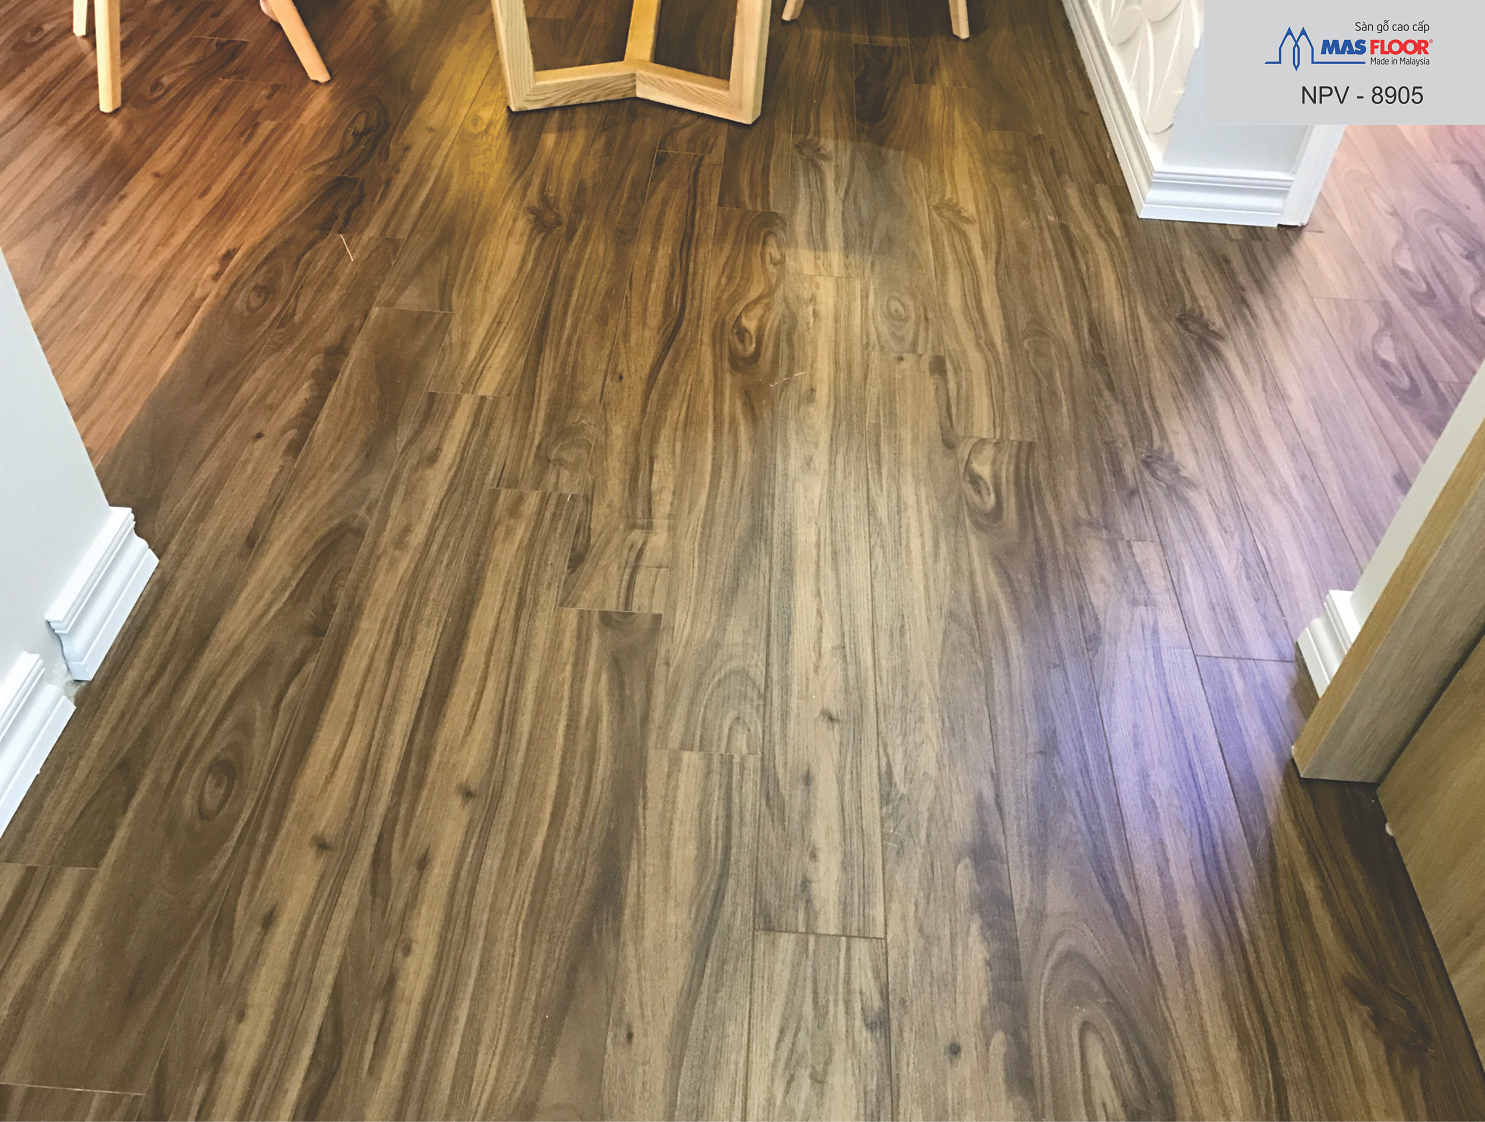 Sàn gỗ là vật liệu được khuyên dùng trong các không gian thiết kế nội thất